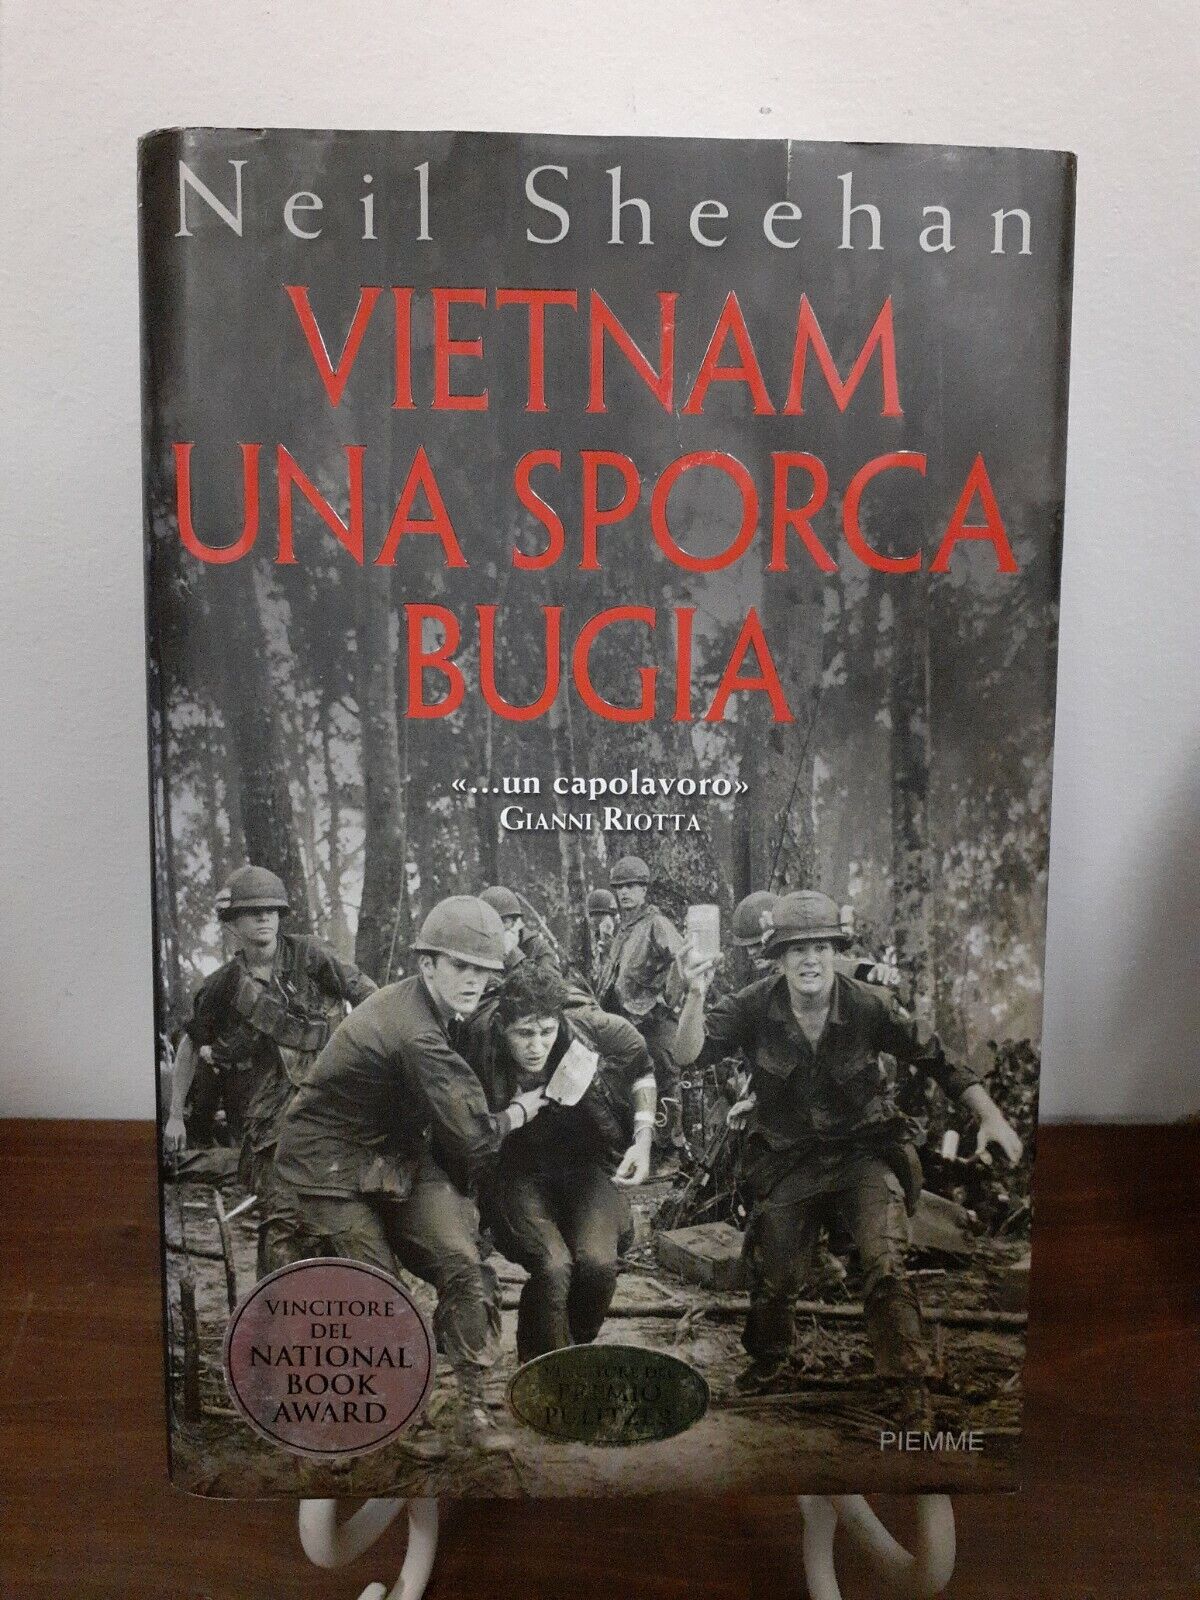 SHEEHAN - VIETNAM UNA SPORCA BUGIA [ PIEMME, 2003 ]